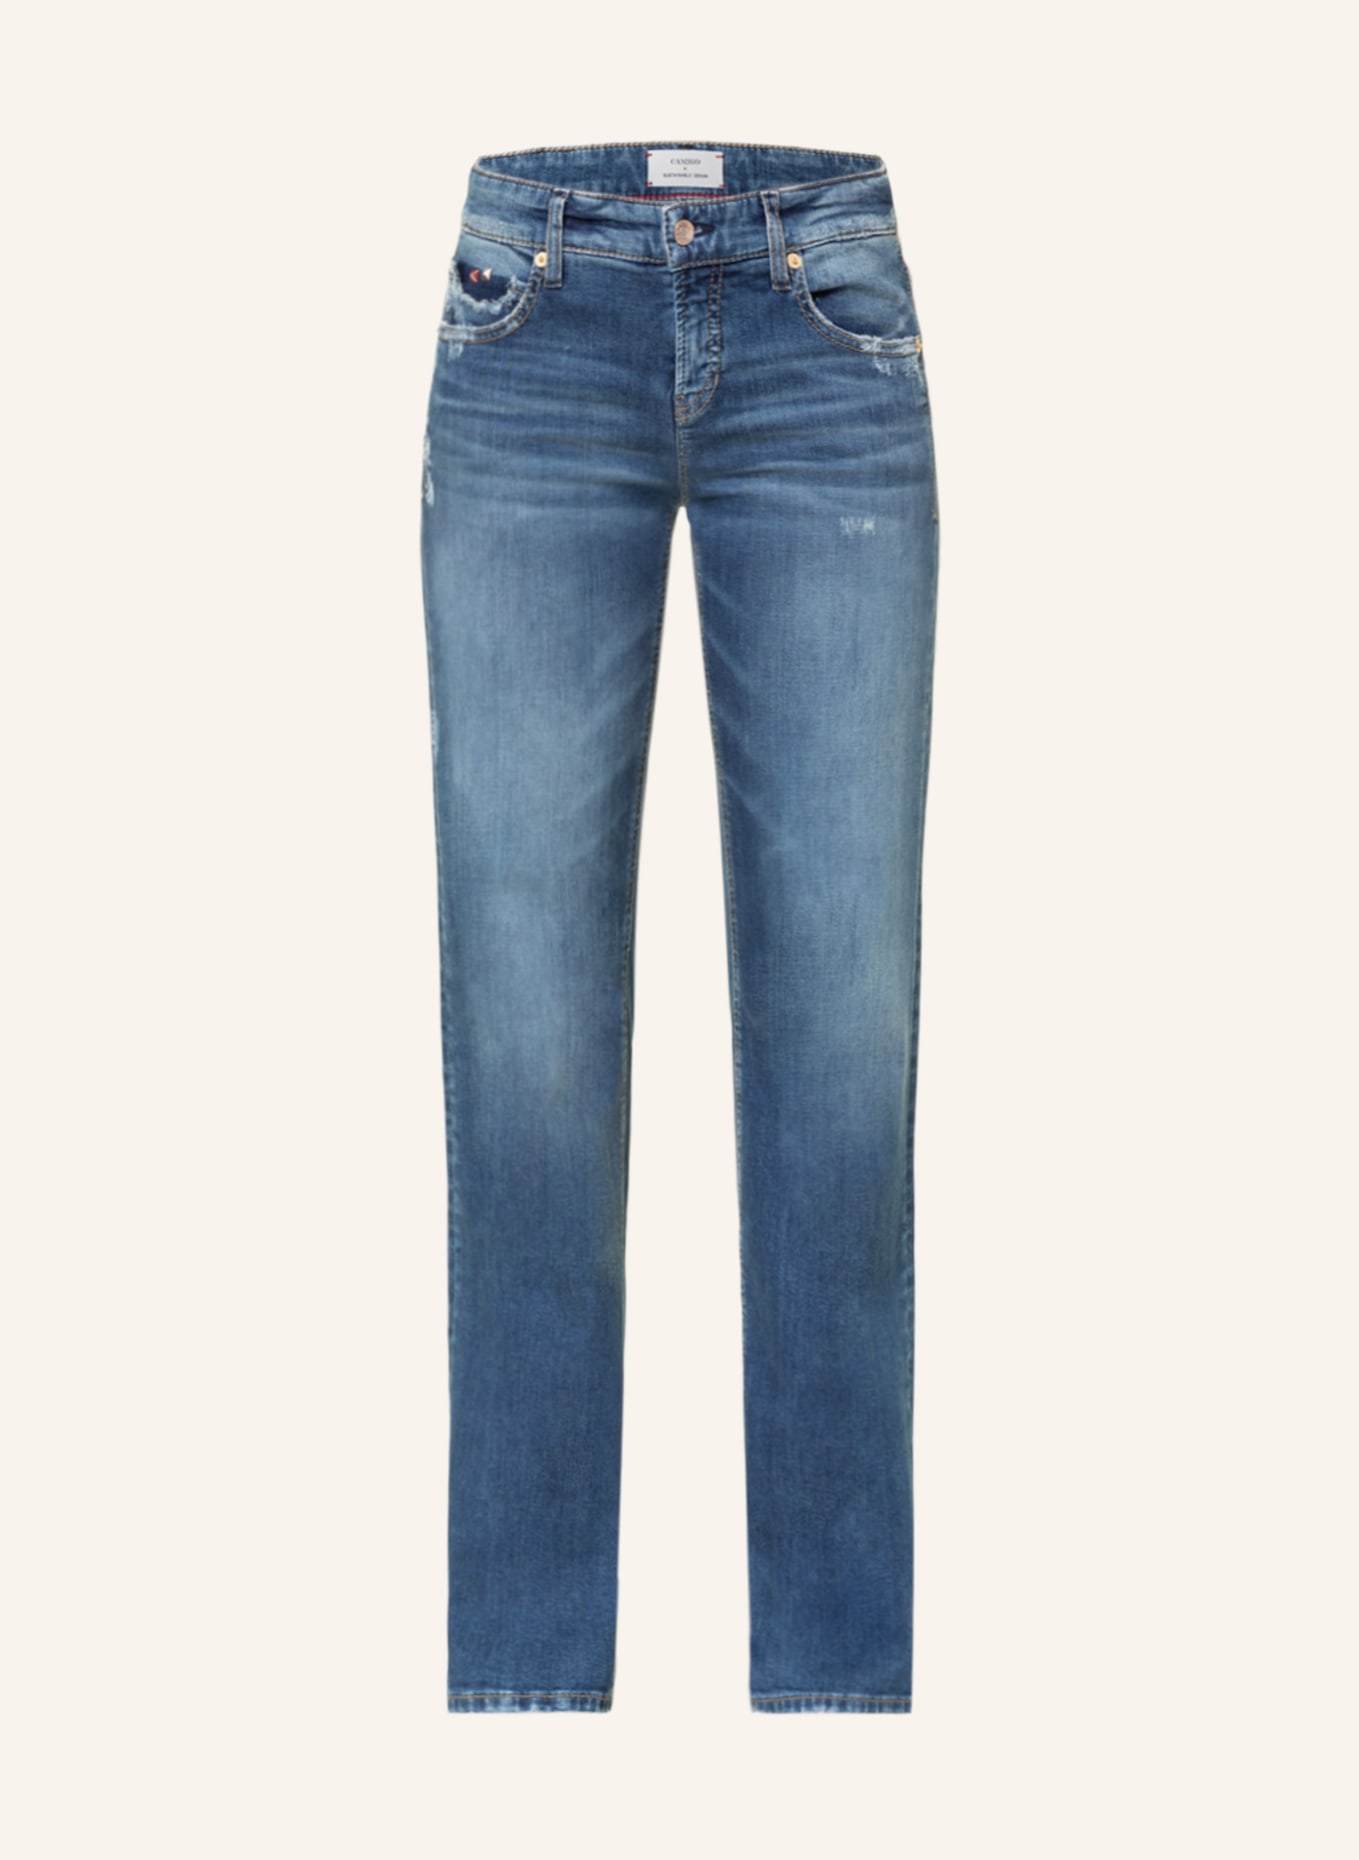 CAMBIO Jeans TESS mit Schmucksteinen, Farbe: 5160 eco modern used (Bild 1)